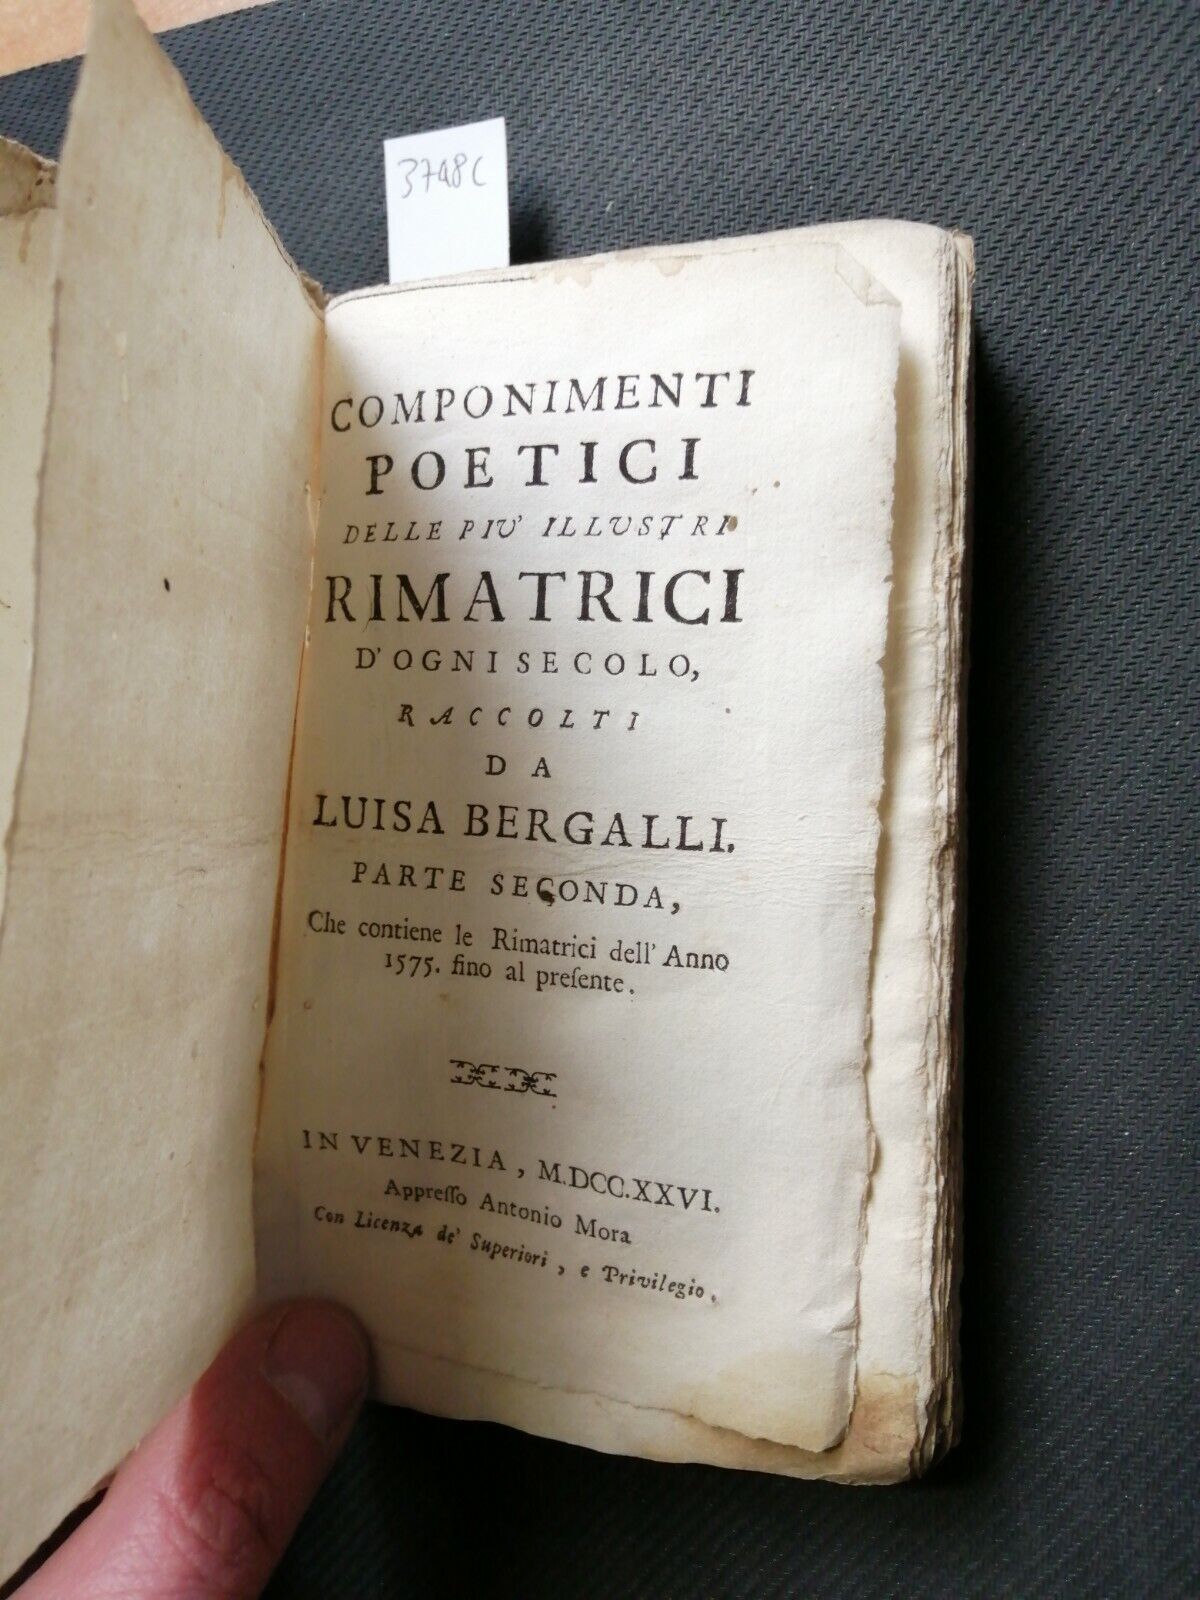 1726 Luisa Bergalli - COMPONIMENTI POETICI delle pi illustri rimatrici (37